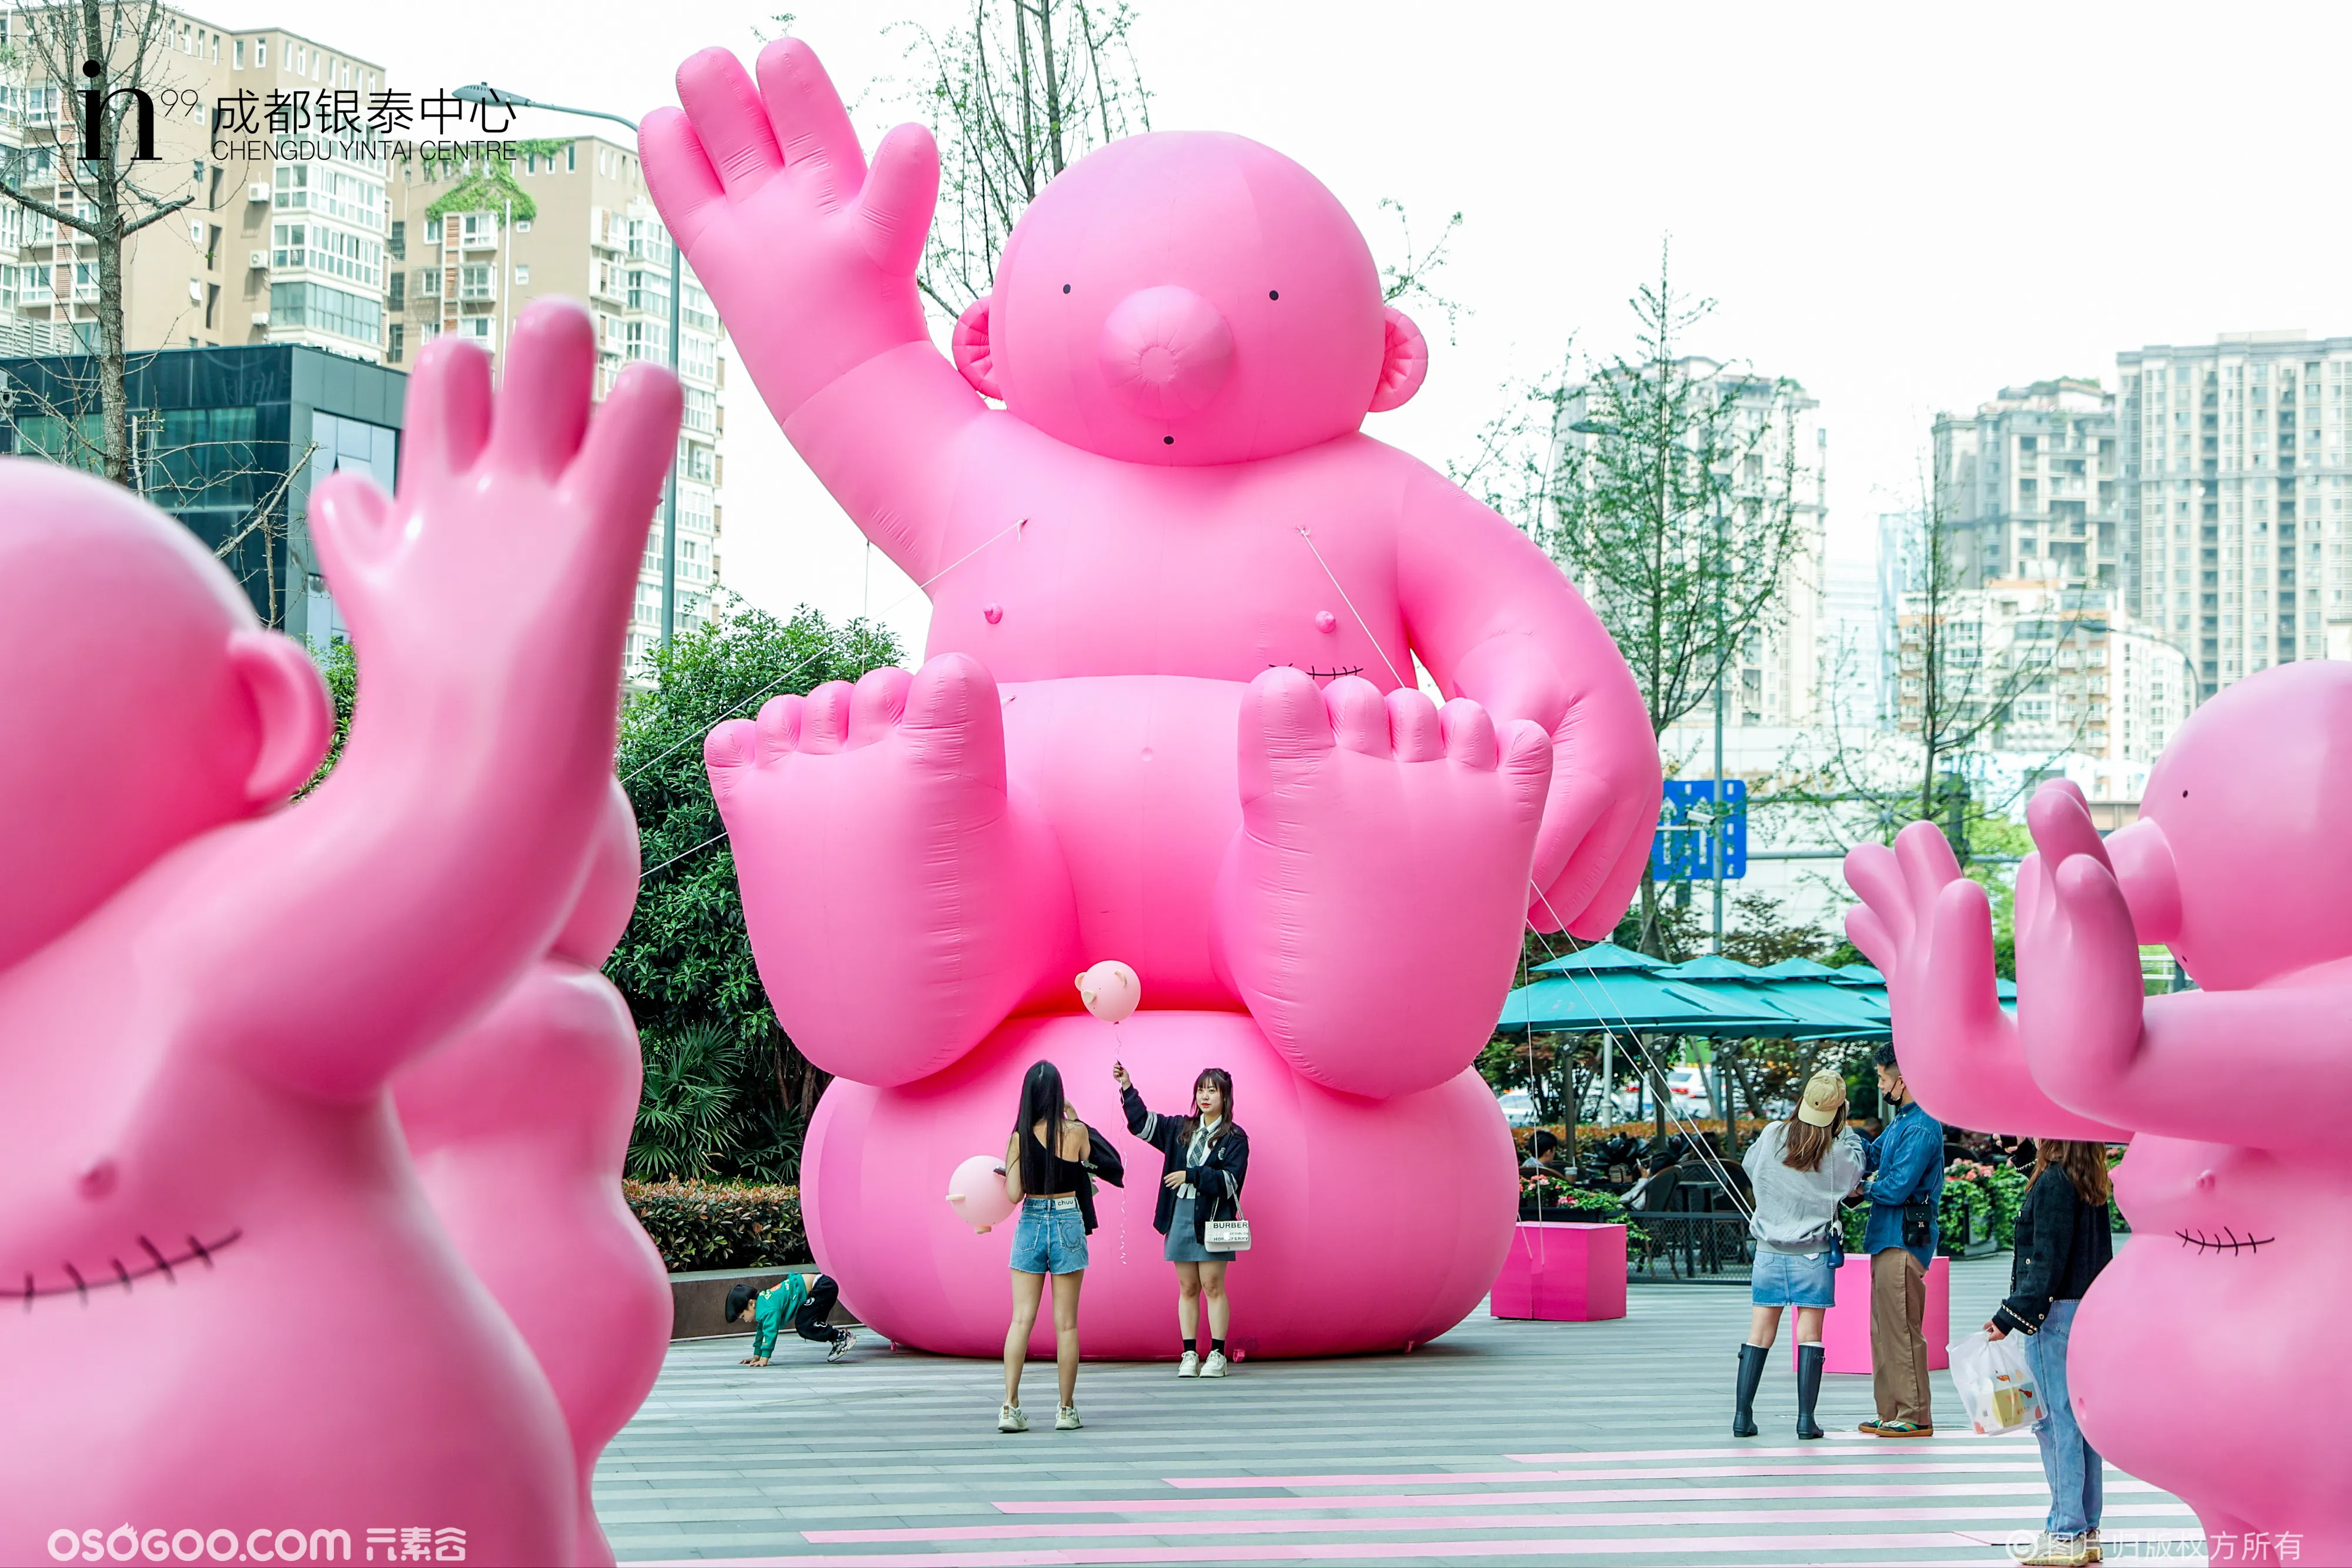 一眼就爱上粉粉小胖娃「 Mr.Rose巨型小粉娃中国首展 」